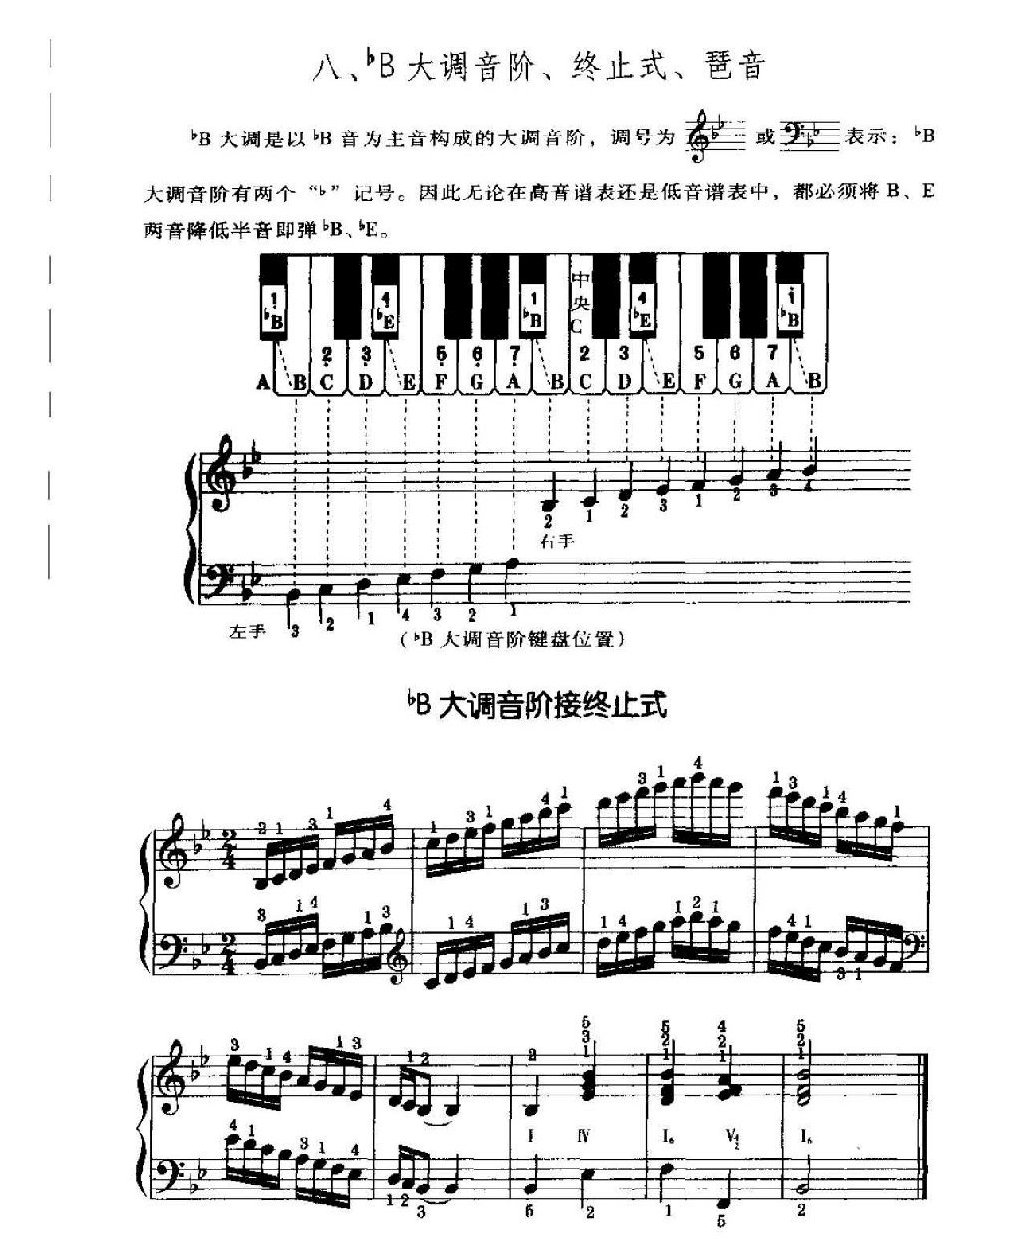 电子琴常用调练习曲多指和弦伴奏 bB大调音阶、终止式、琶音